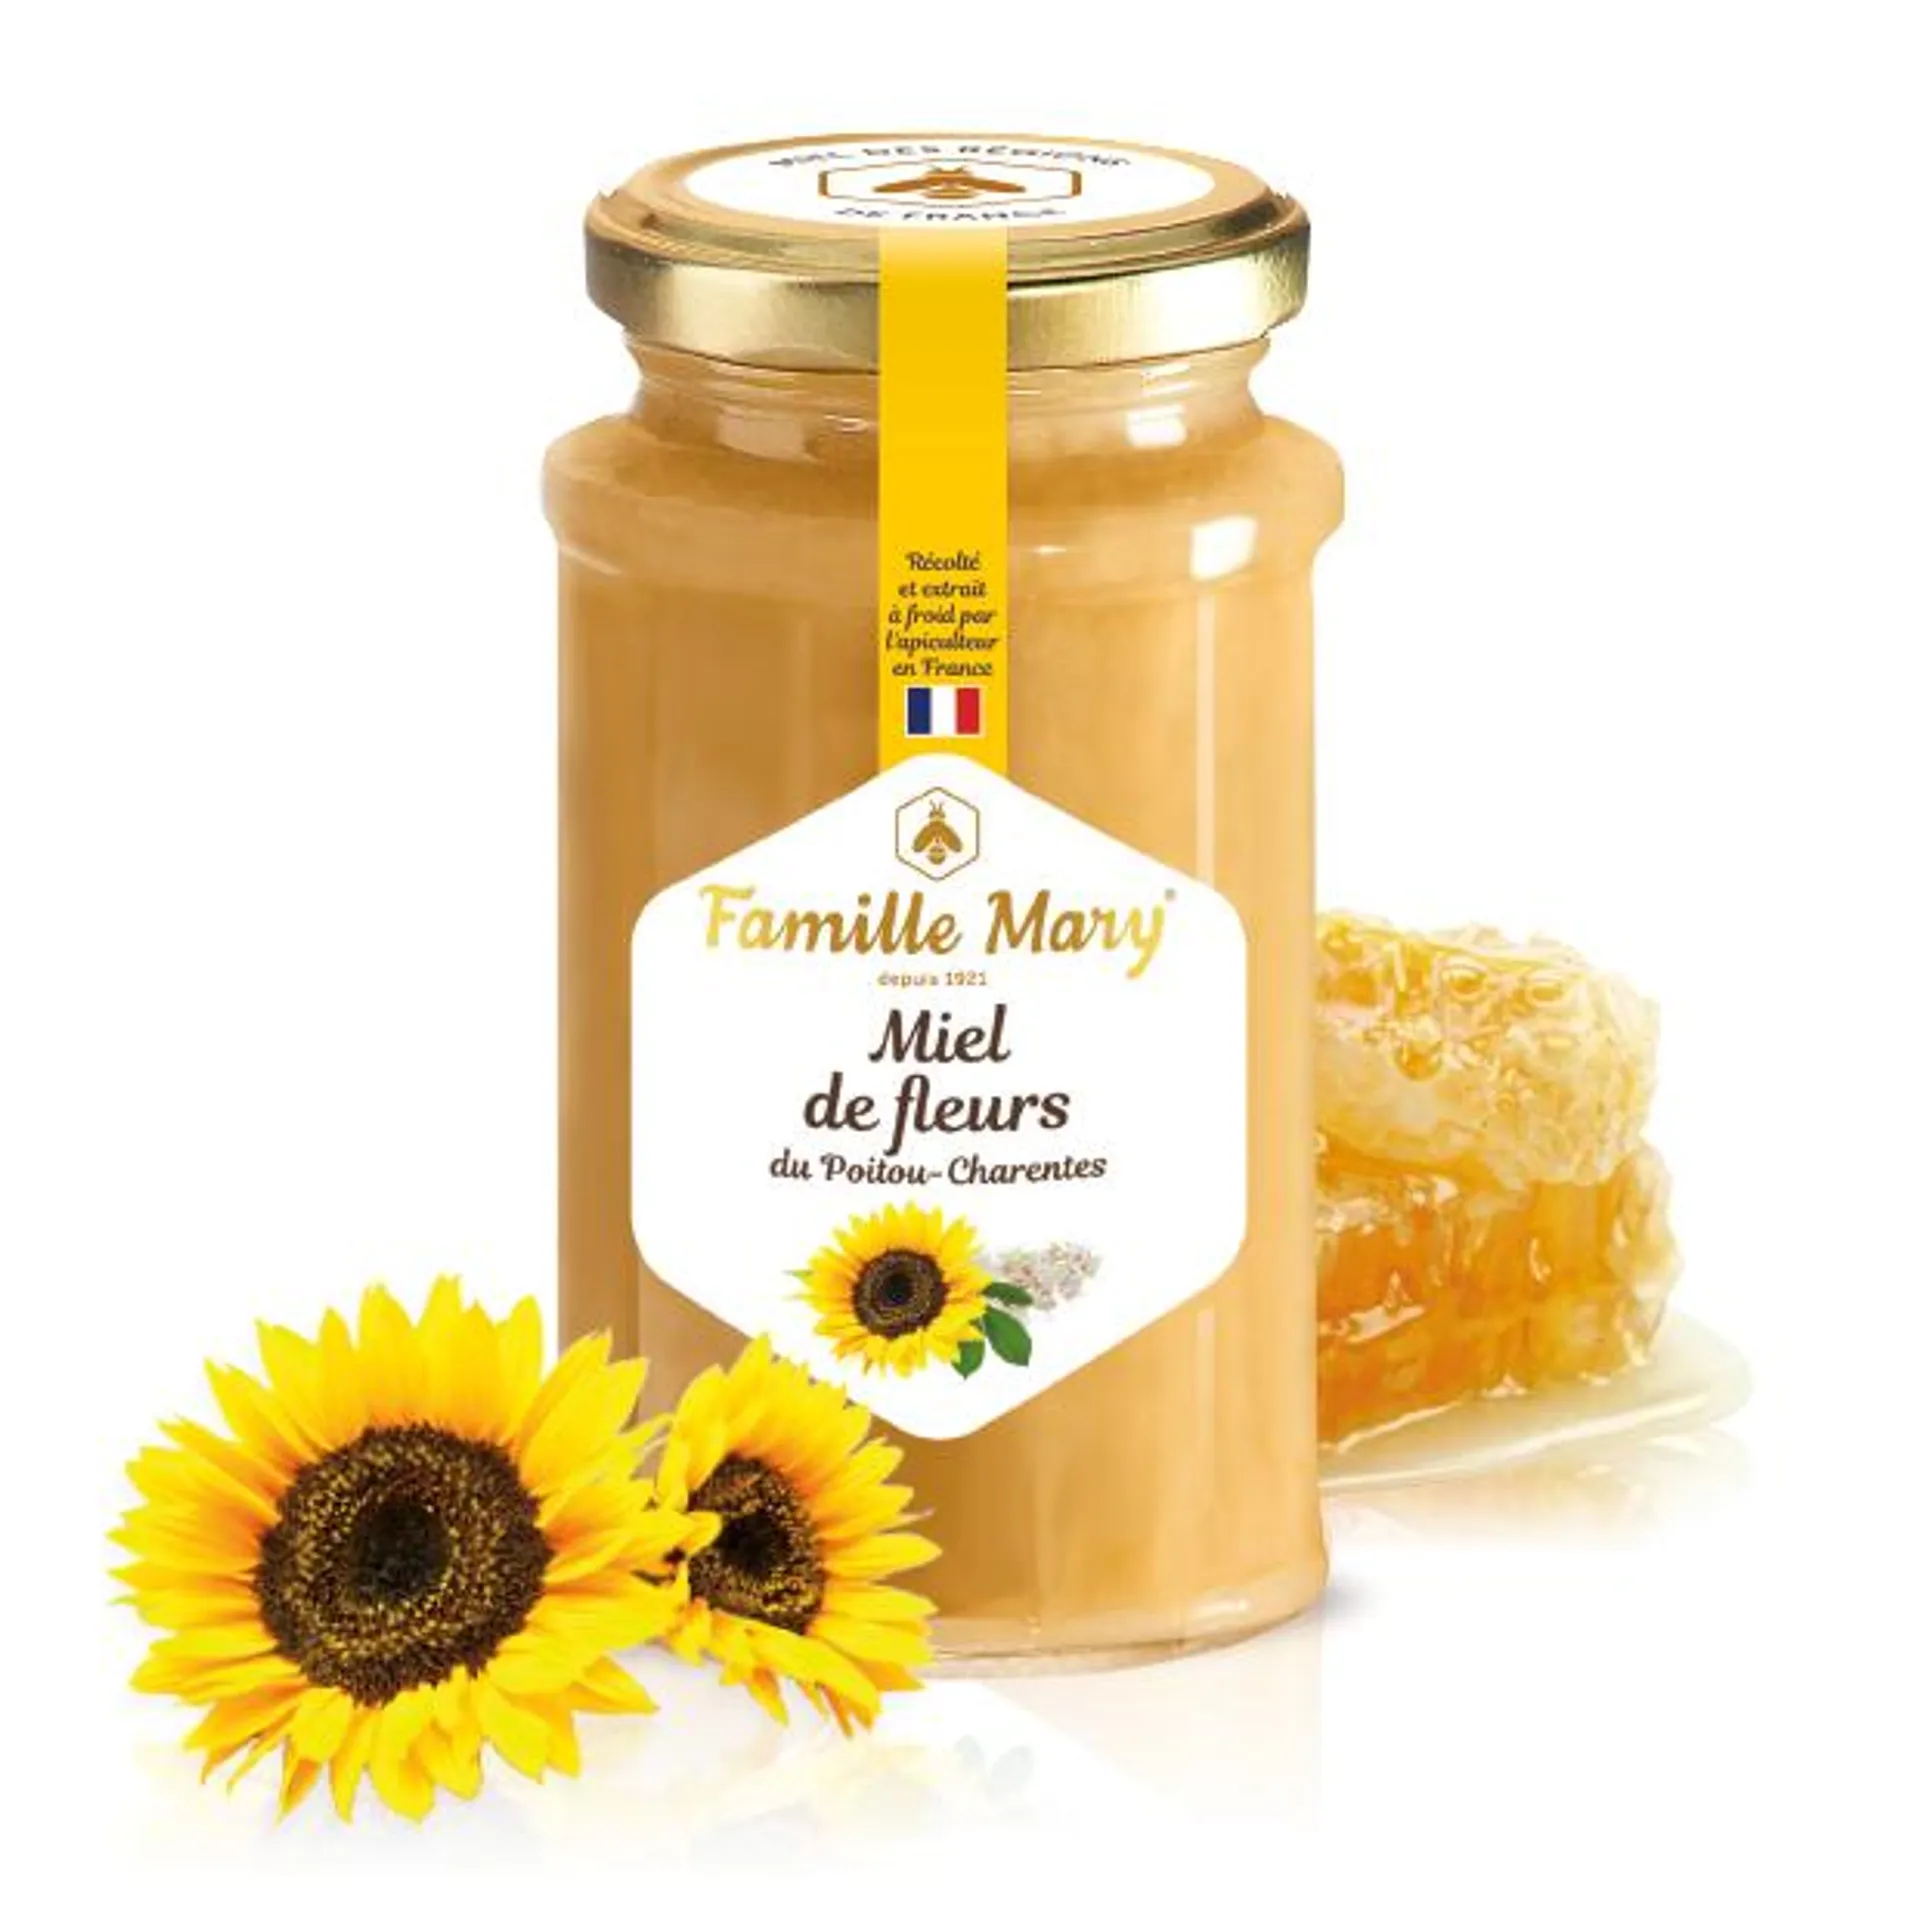 Miel de fleurs du Poitou-Charente